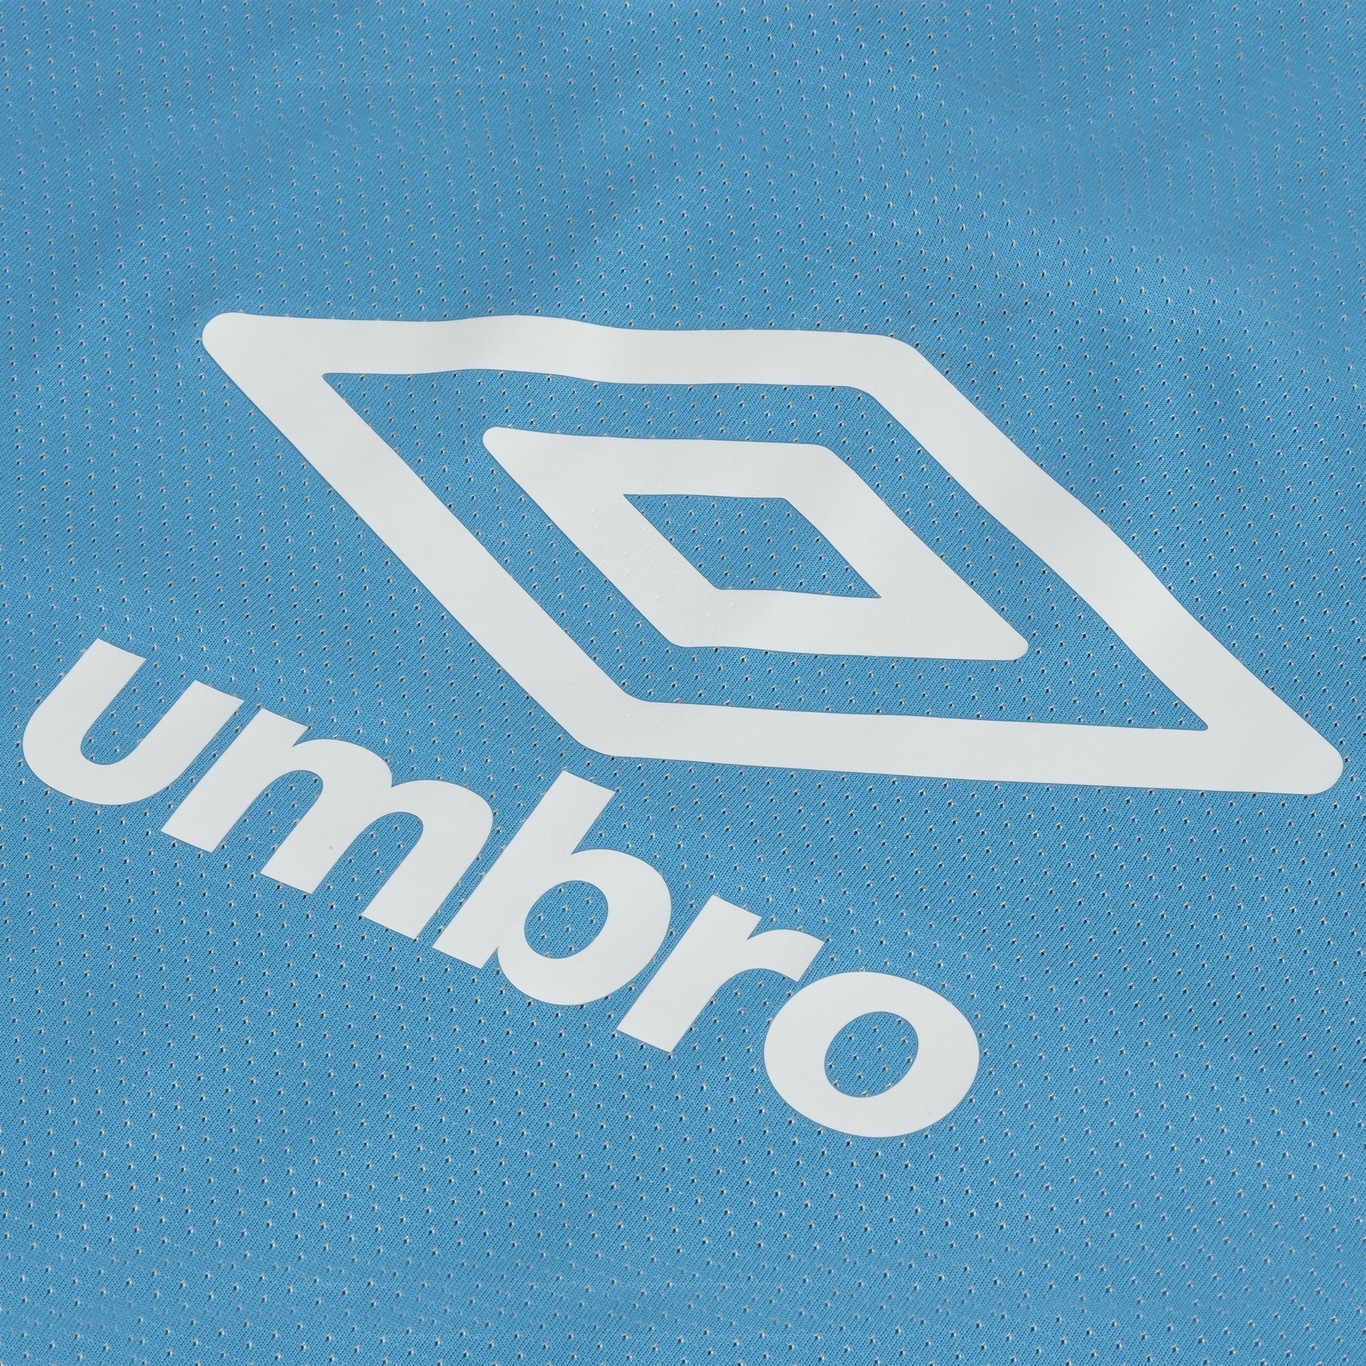 Camisa de Treino do Grêmio 21 Umbro - Masculina - Foto 5